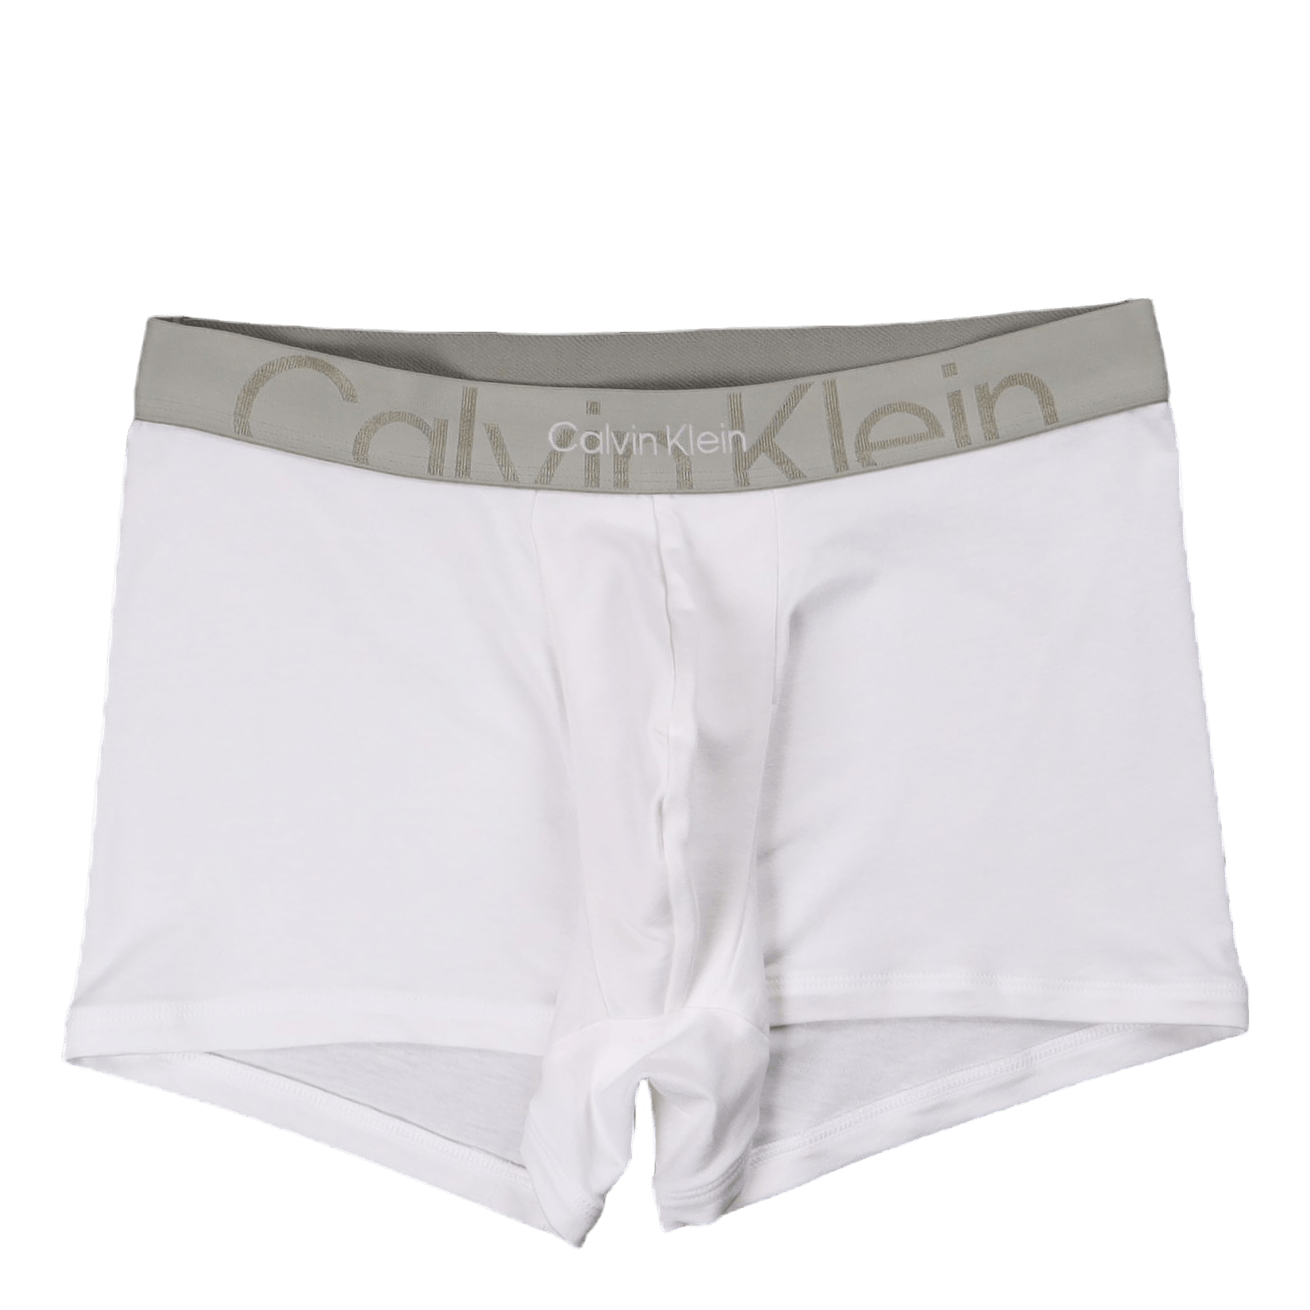 Reiss Black Calvin Klein Underwear Low Rise Trunk